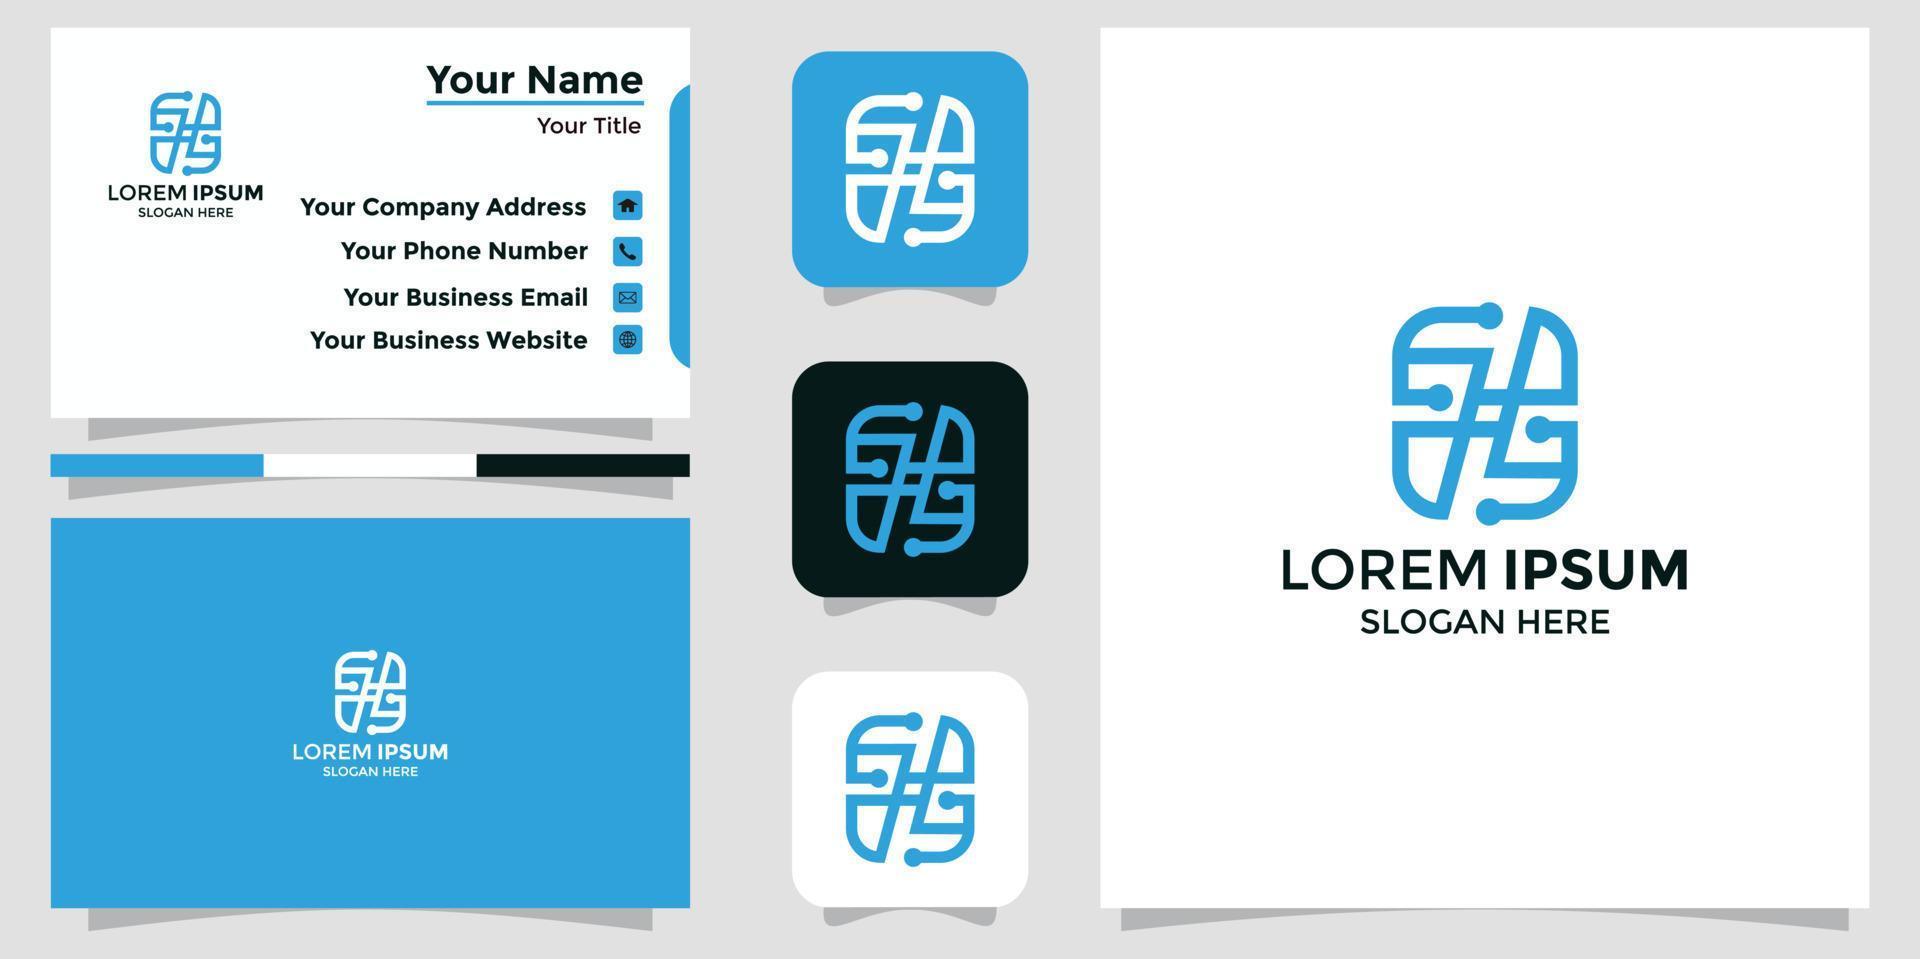 SH letter logo and branding card vector